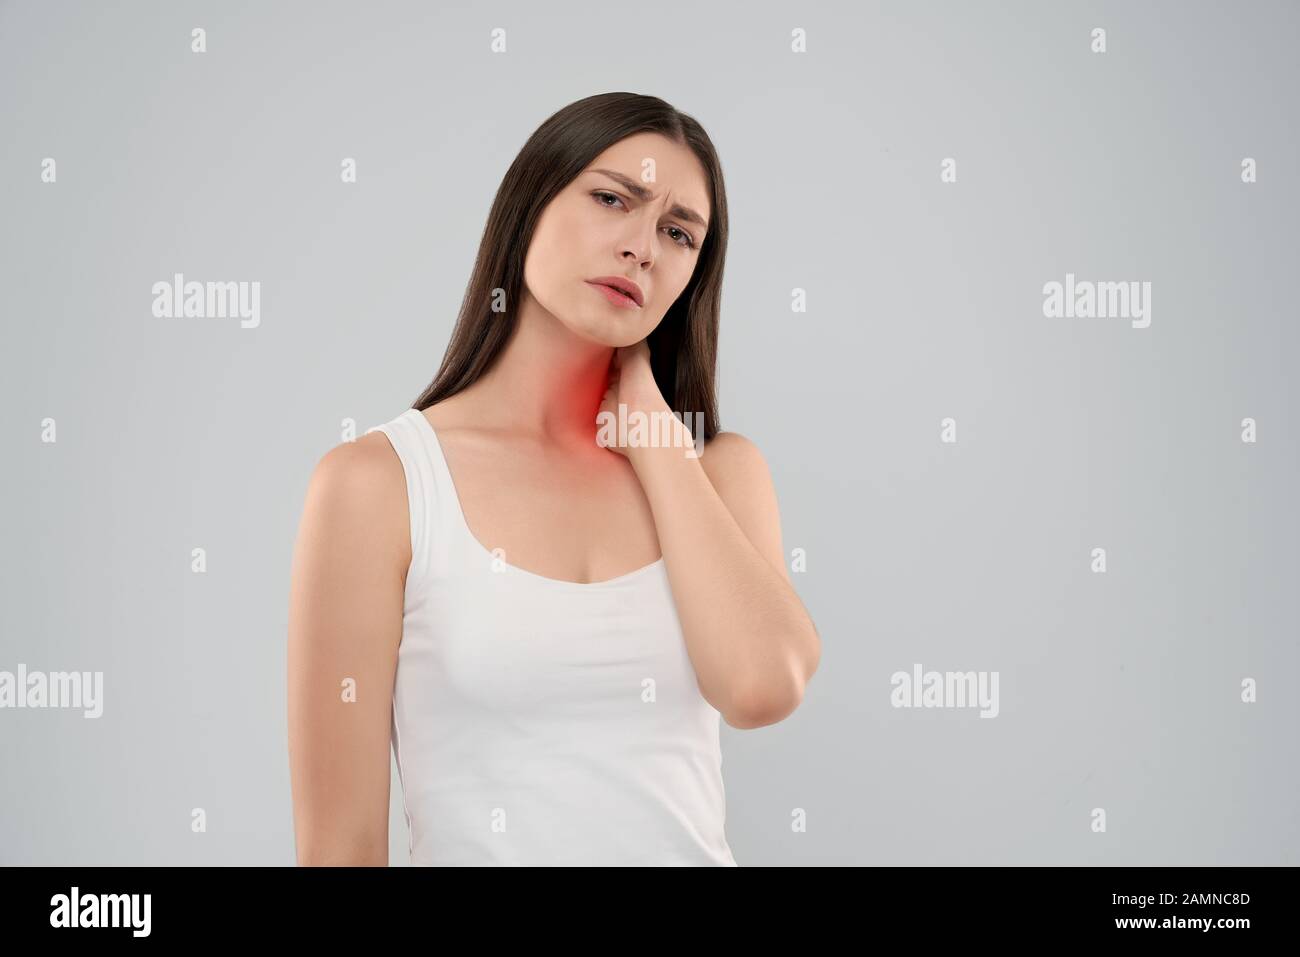 Junge kaukasier Frau in Weiß shirt über Grau isoliert Hintergrund Hals berühren mit der Hand mit schmerzhaften Ausdruck wegen der Schmerzen. Vorderansicht des Brünette mit offenen Mund an Kamera schaut. Stockfoto